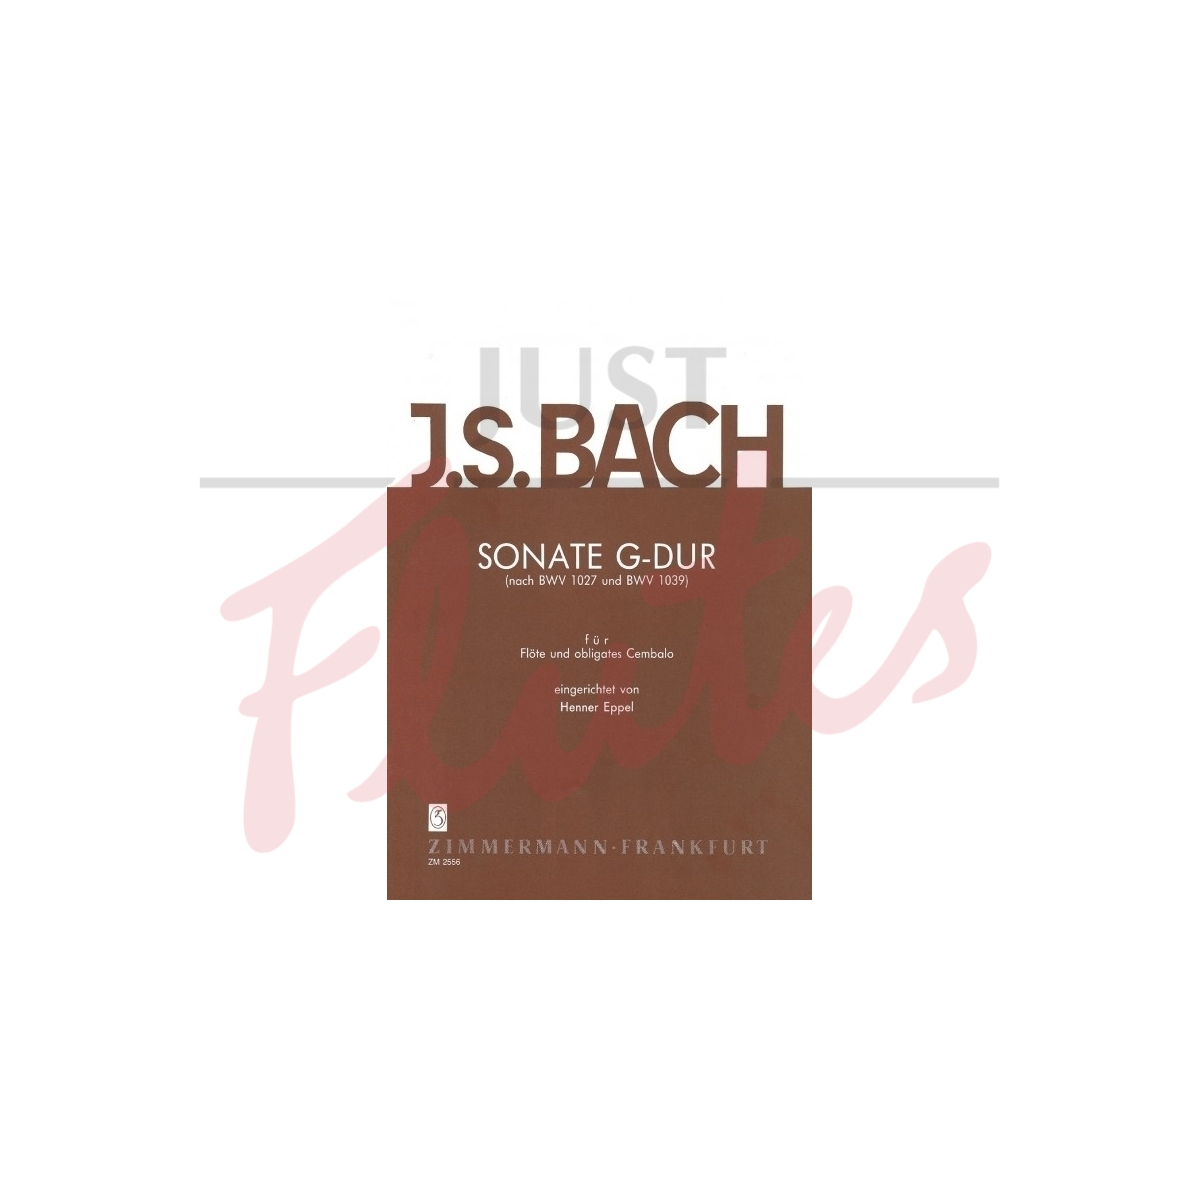 Sonata in G major, BWV1027 / BWV1039